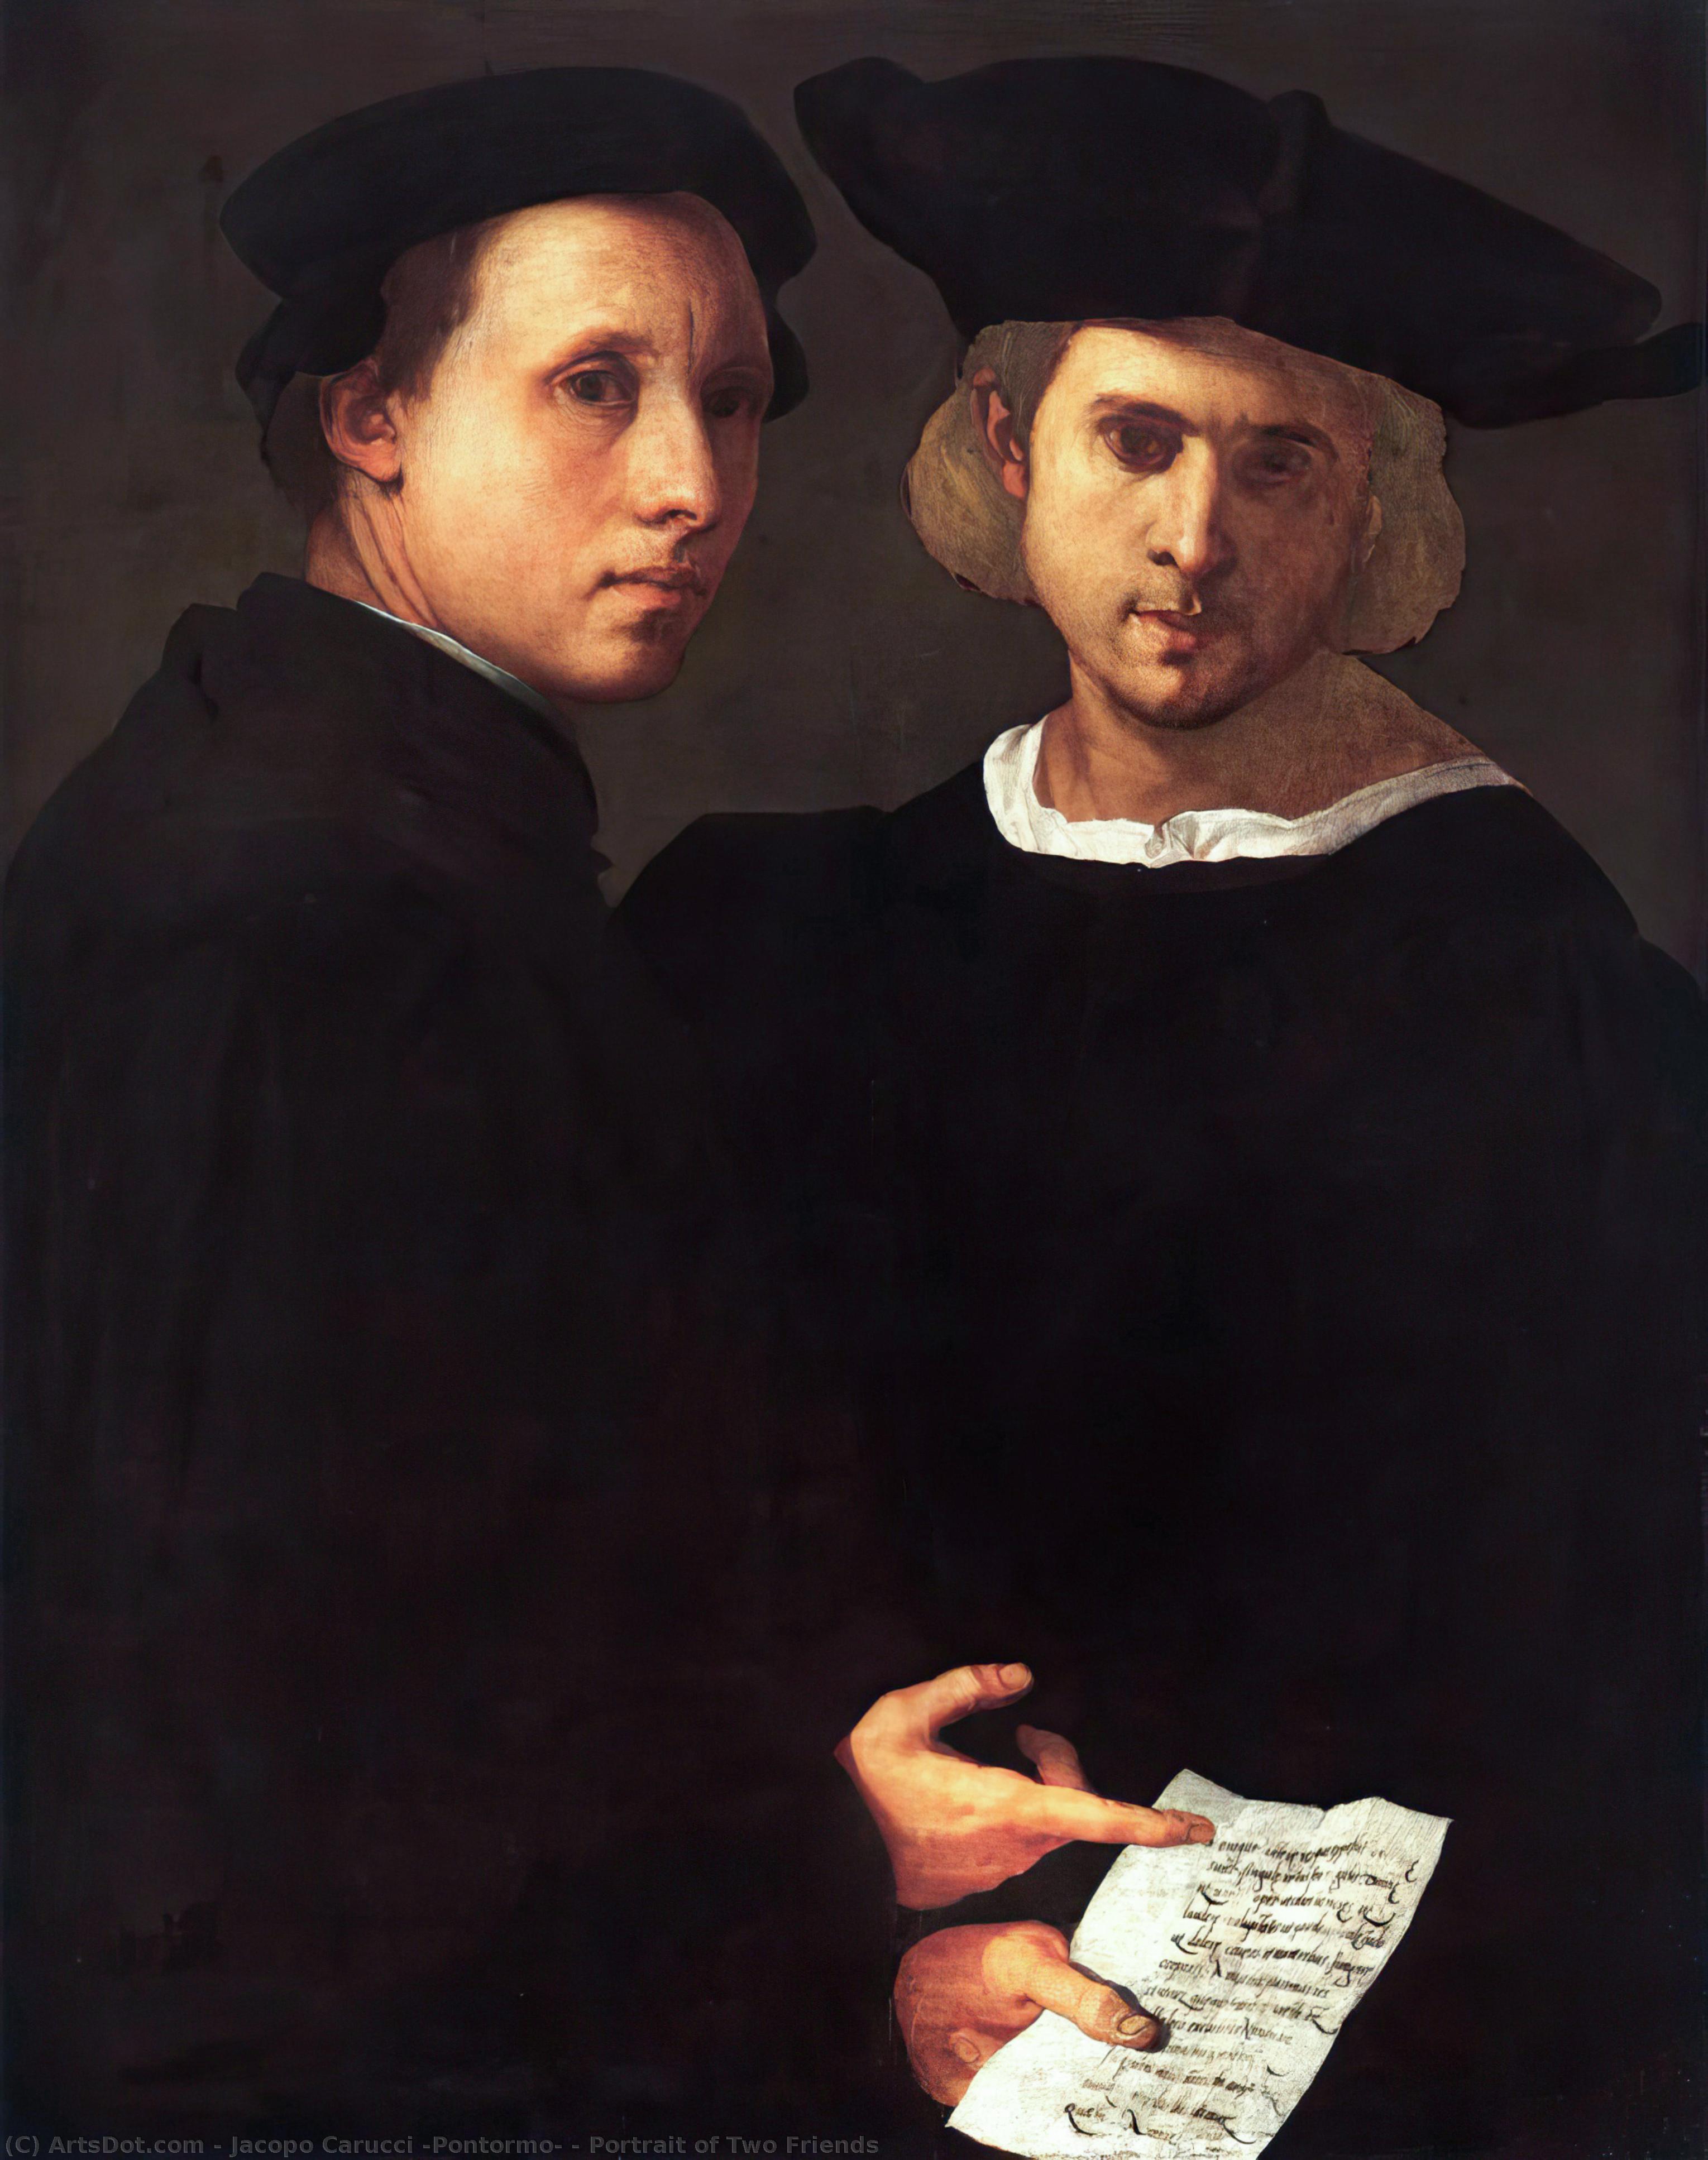 WikiOO.org - Εγκυκλοπαίδεια Καλών Τεχνών - Ζωγραφική, έργα τέχνης Jacopo Carucci (Pontormo) - Portrait of Two Friends